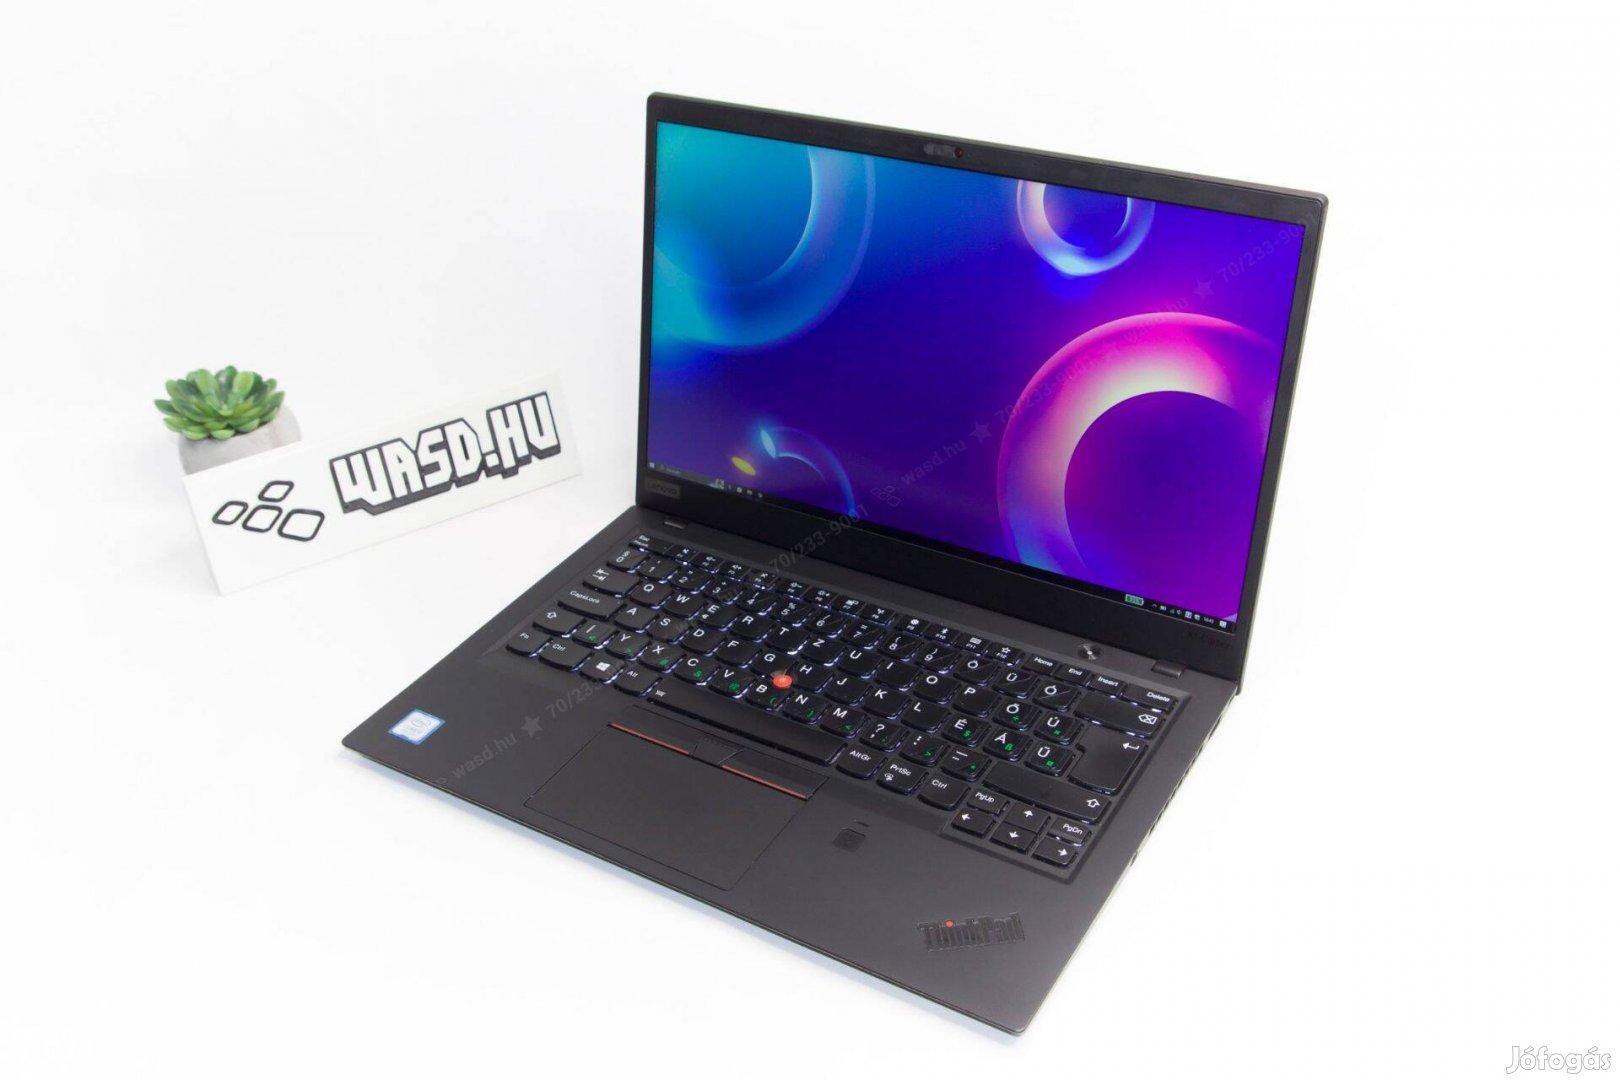 Thinkpad X1 carbon laptop, csupán 1.1kg, számlával és garanciával